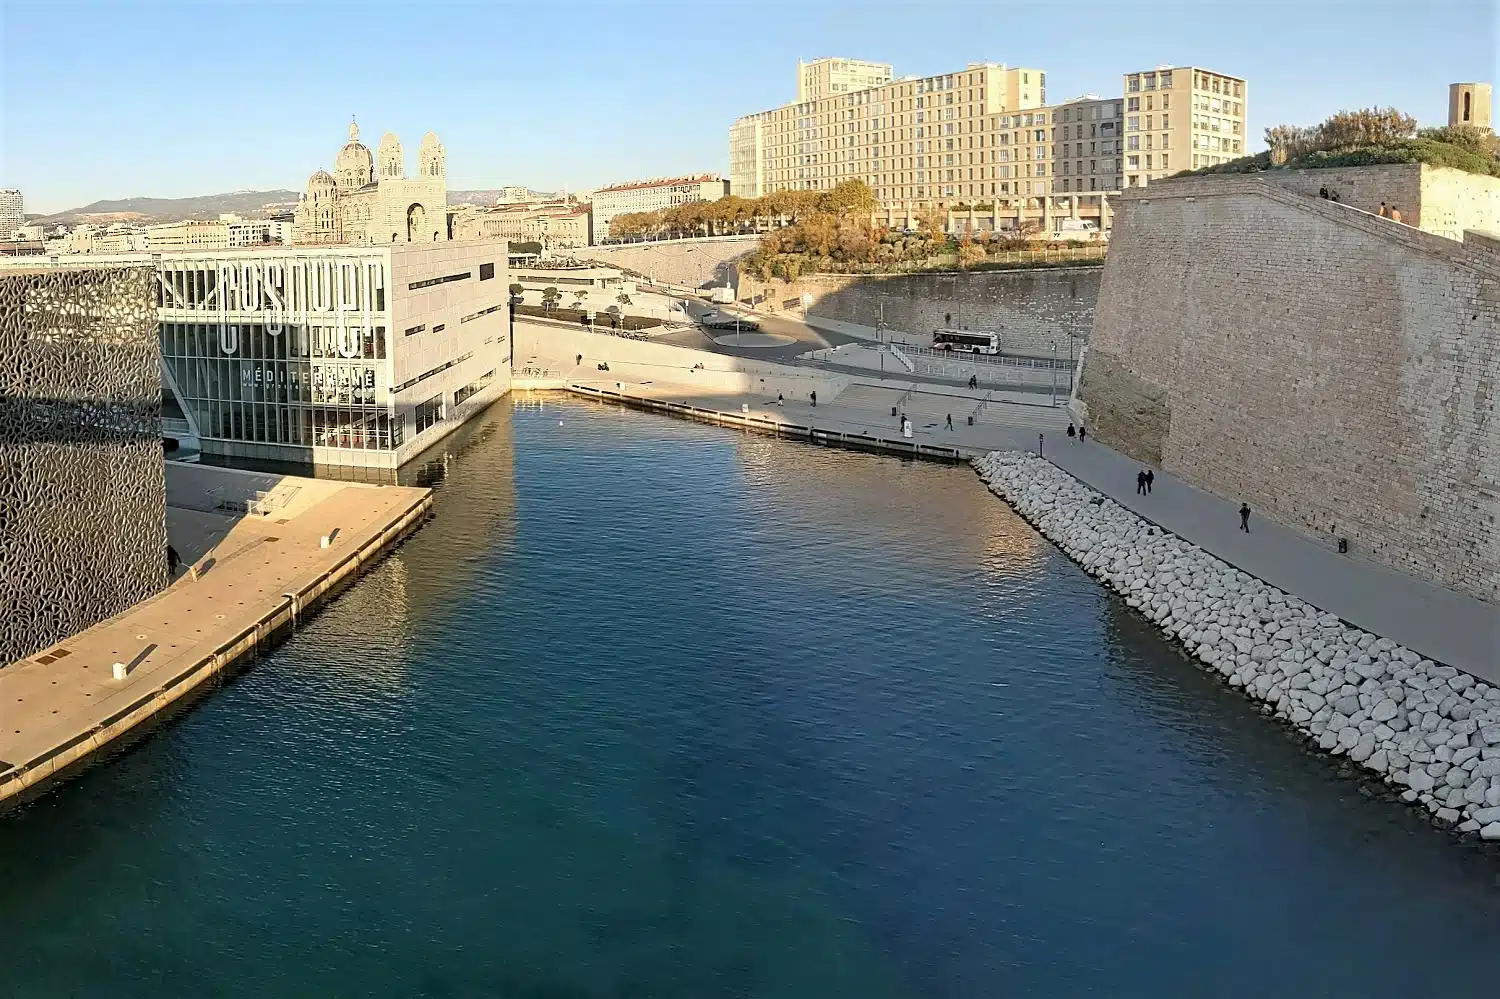 spot de baignade, Le nouveau spot de baignade du J4 doit ouvrir début juillet, Made in Marseille